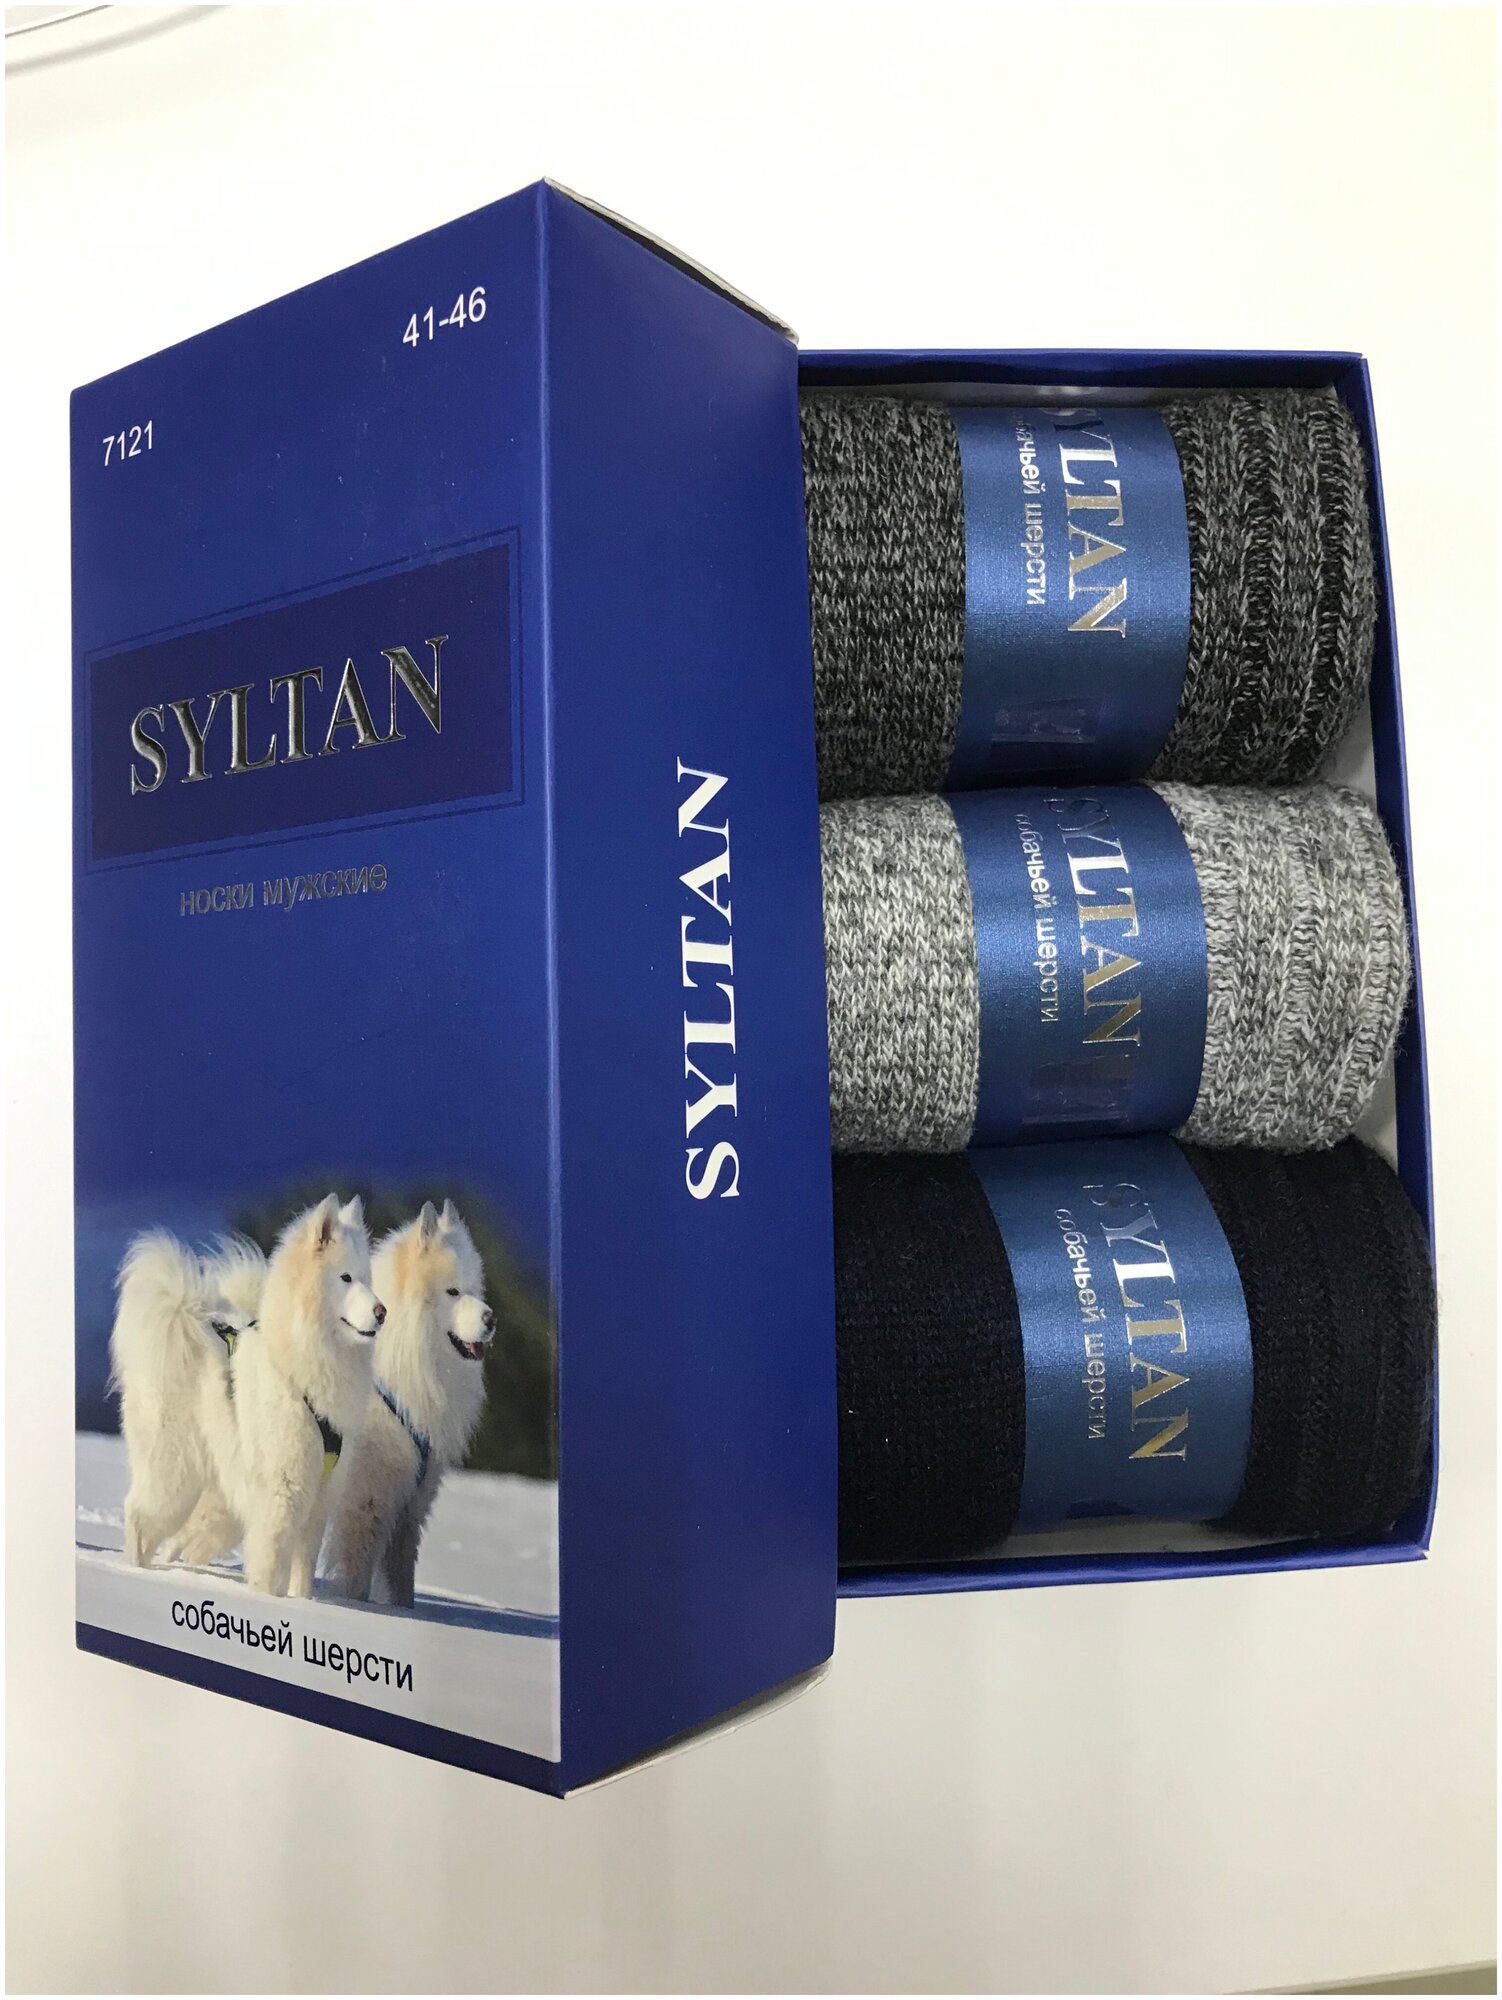 Носки теплые Syltan в подарочной коробке 3 пары мужские однотонные собачья шерсть 41-46